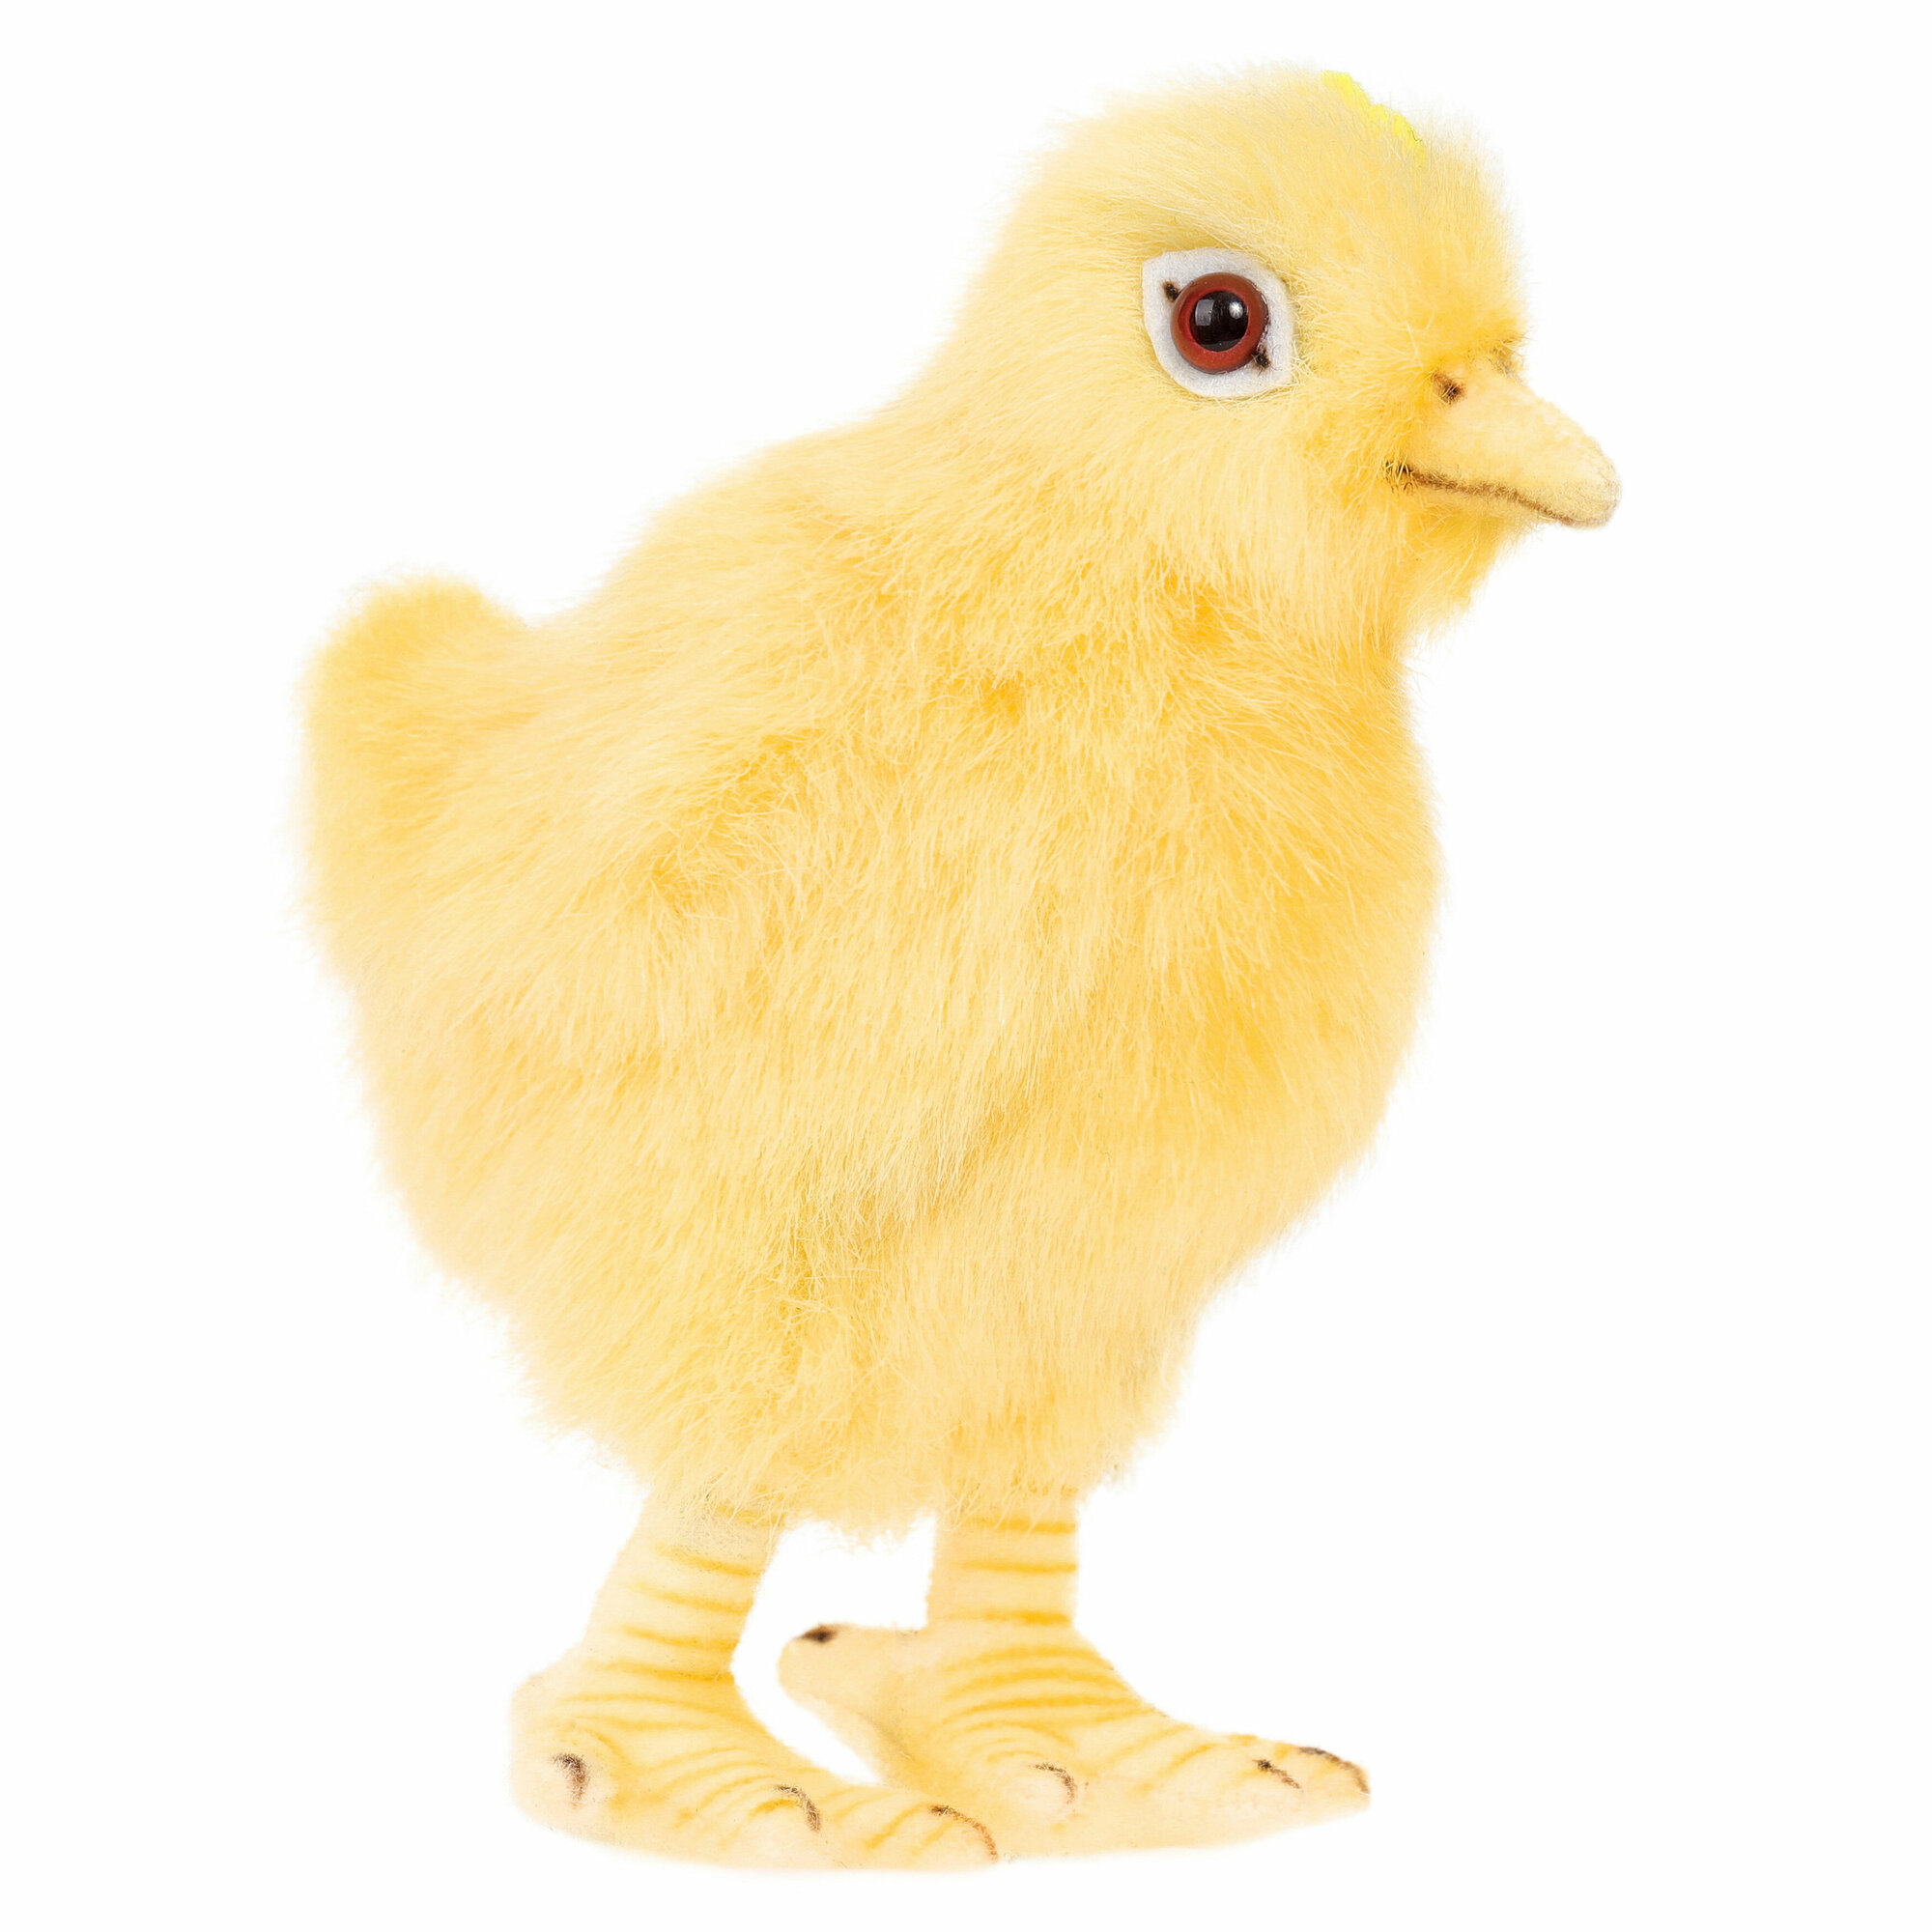 Реалистичная мягкая игрушка Hansa Creation 5378 Цыпленок, 12 см